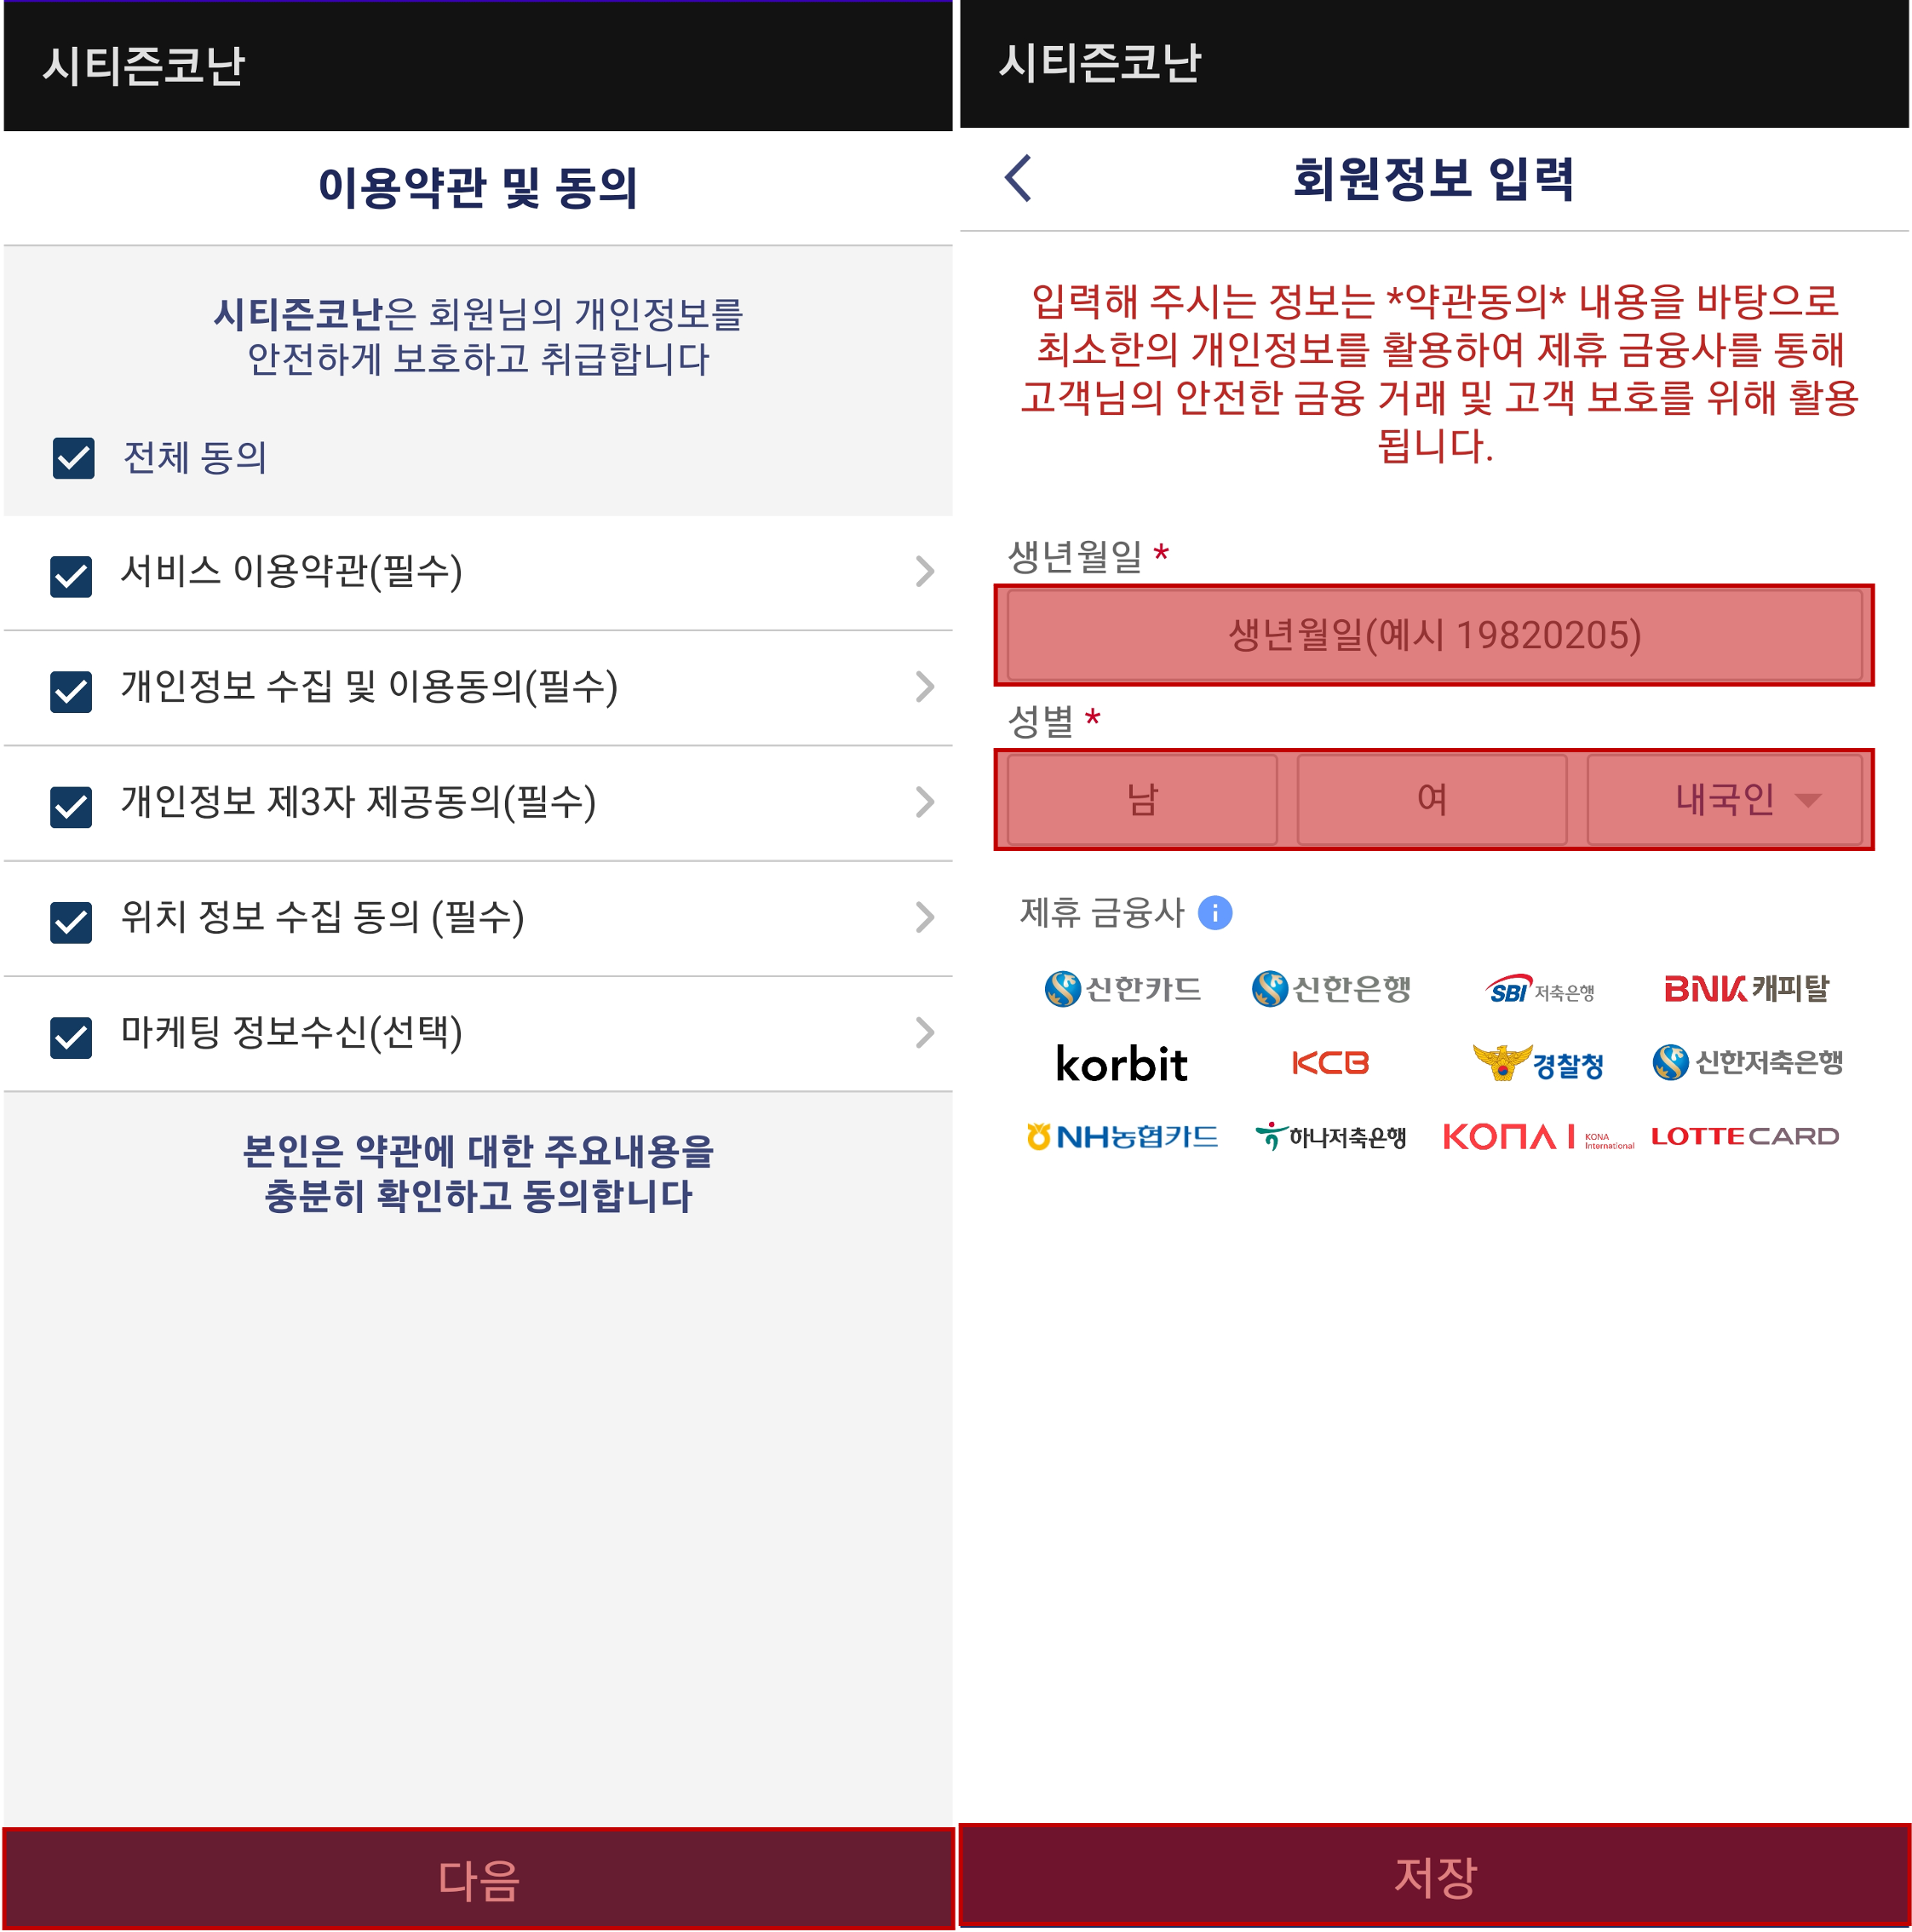 시티즌코난 앱 이용약관 동의 및 회원정보 입력